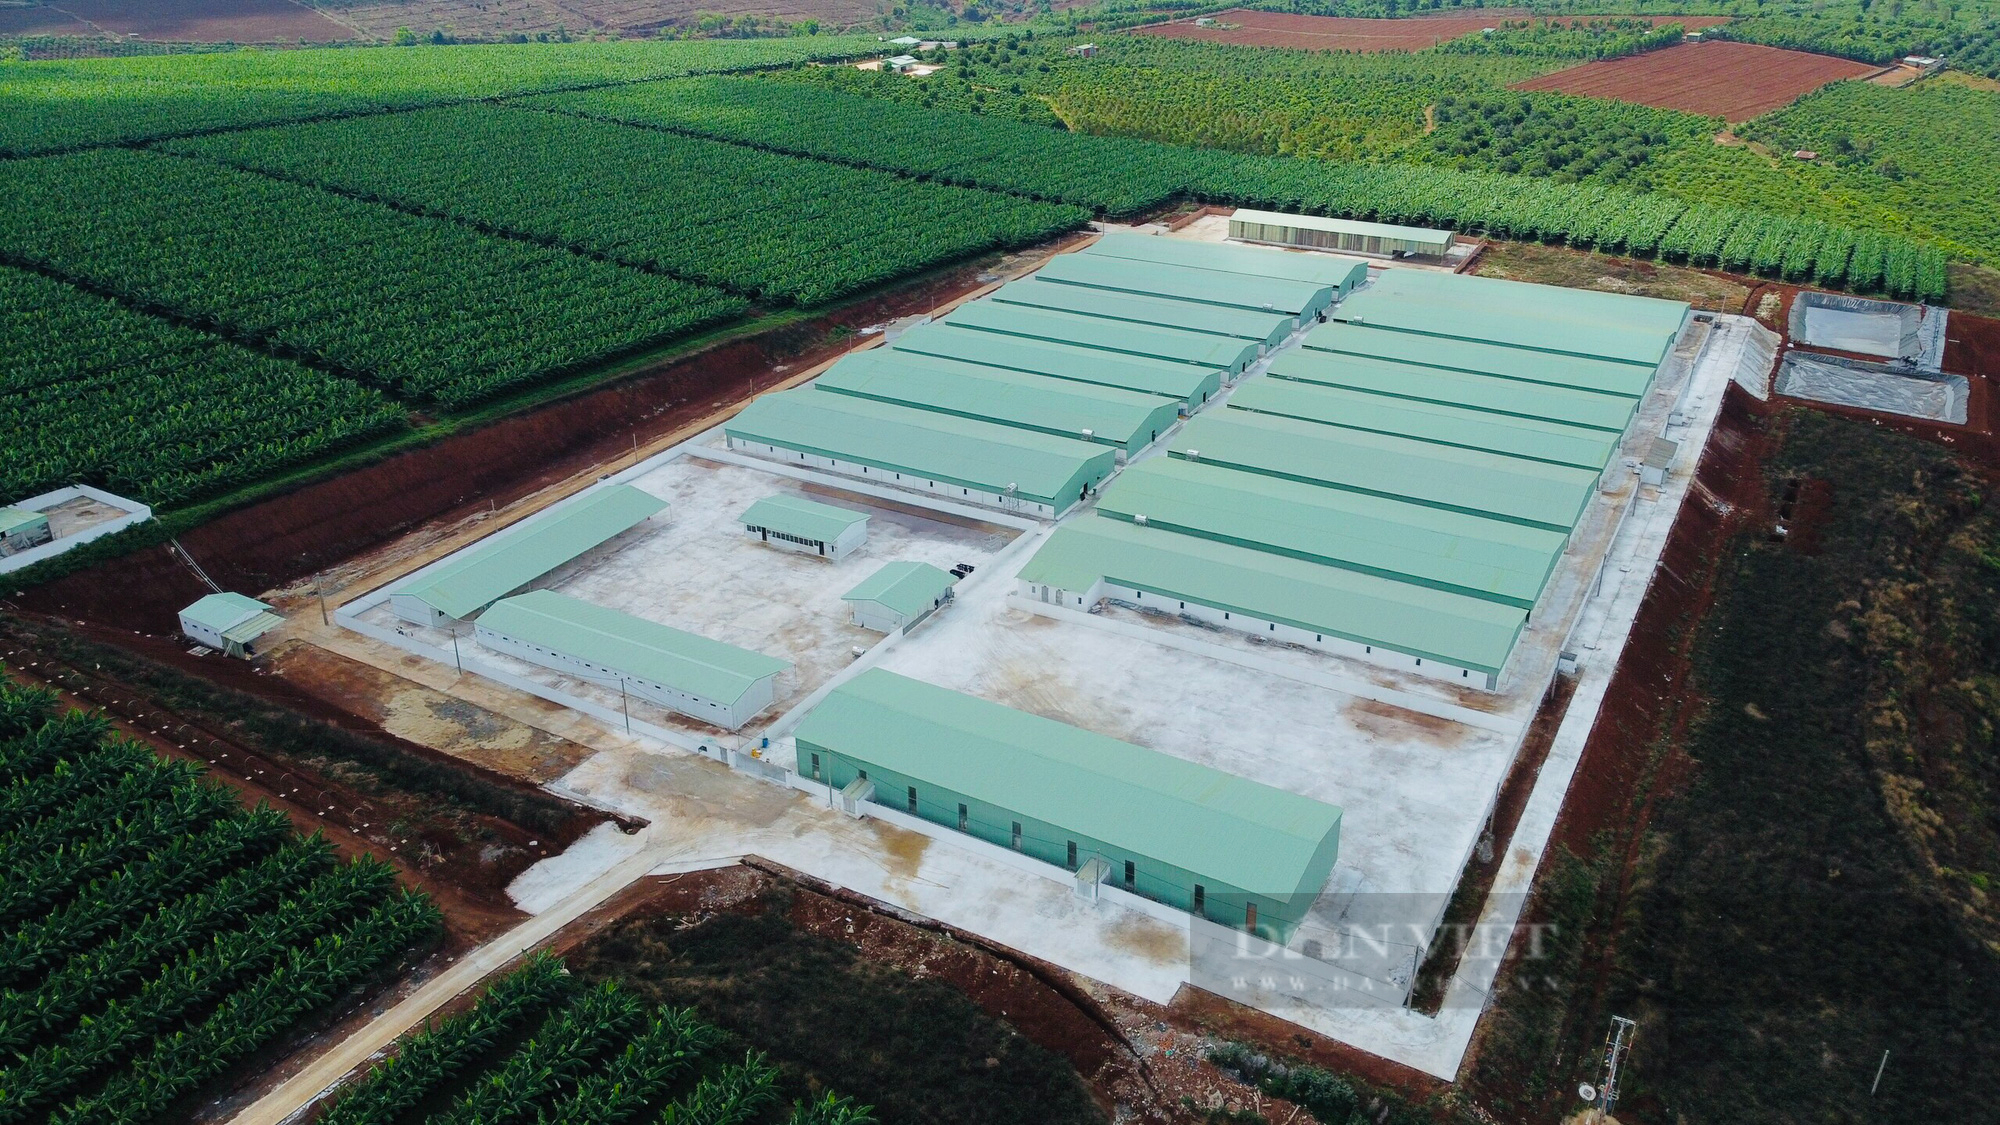 Bất chấp quy định, Công ty Cổ phần gia súc Lơ Pang xây dựng trại heo trái phép gần 100 tỷ đồng - Ảnh 1.